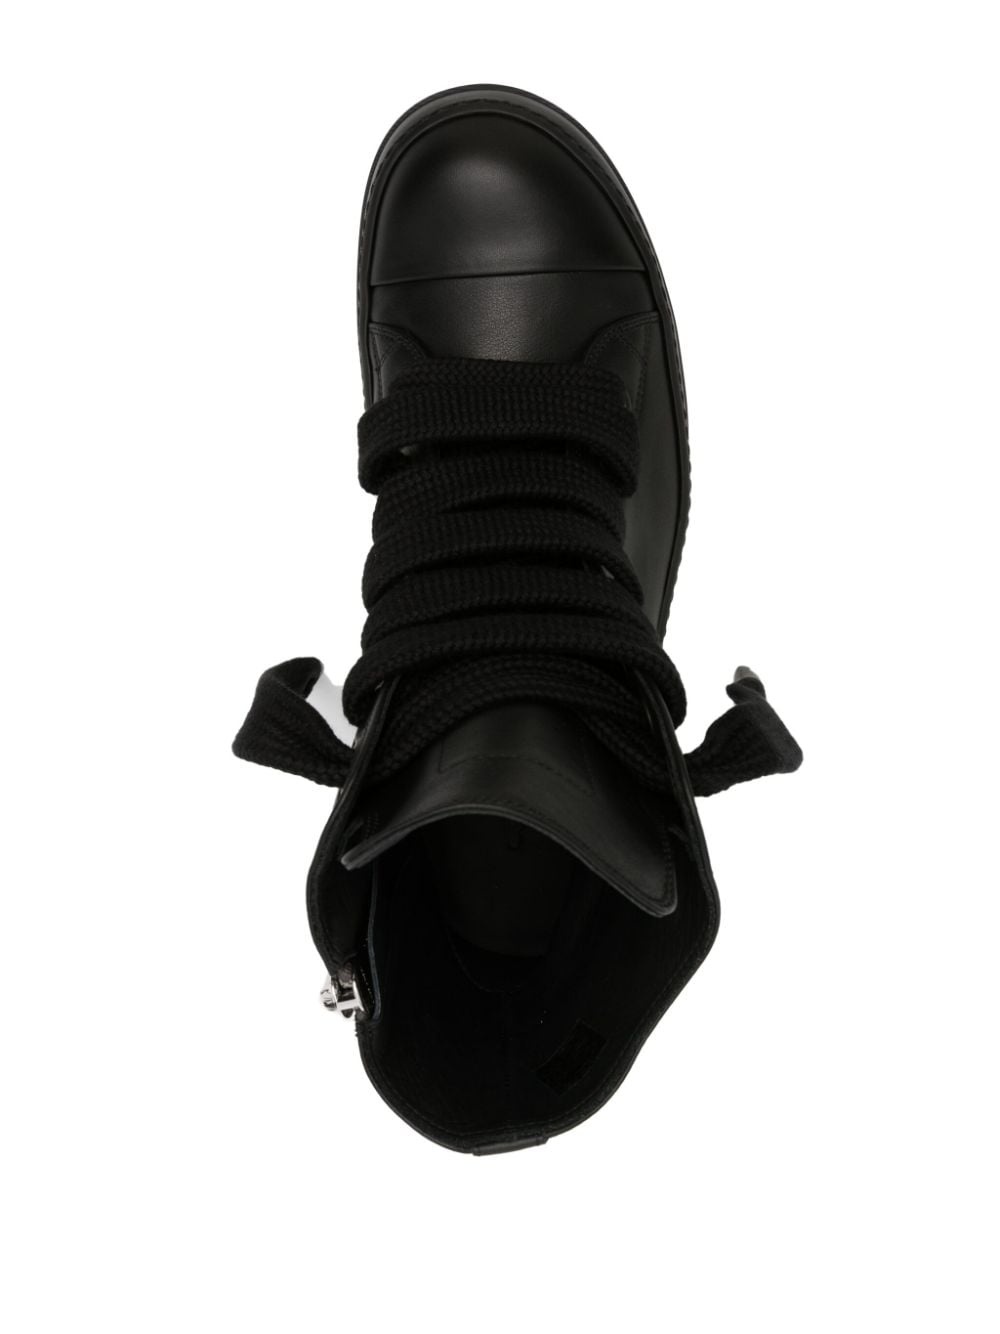 Jumbo leather sneakers - 4